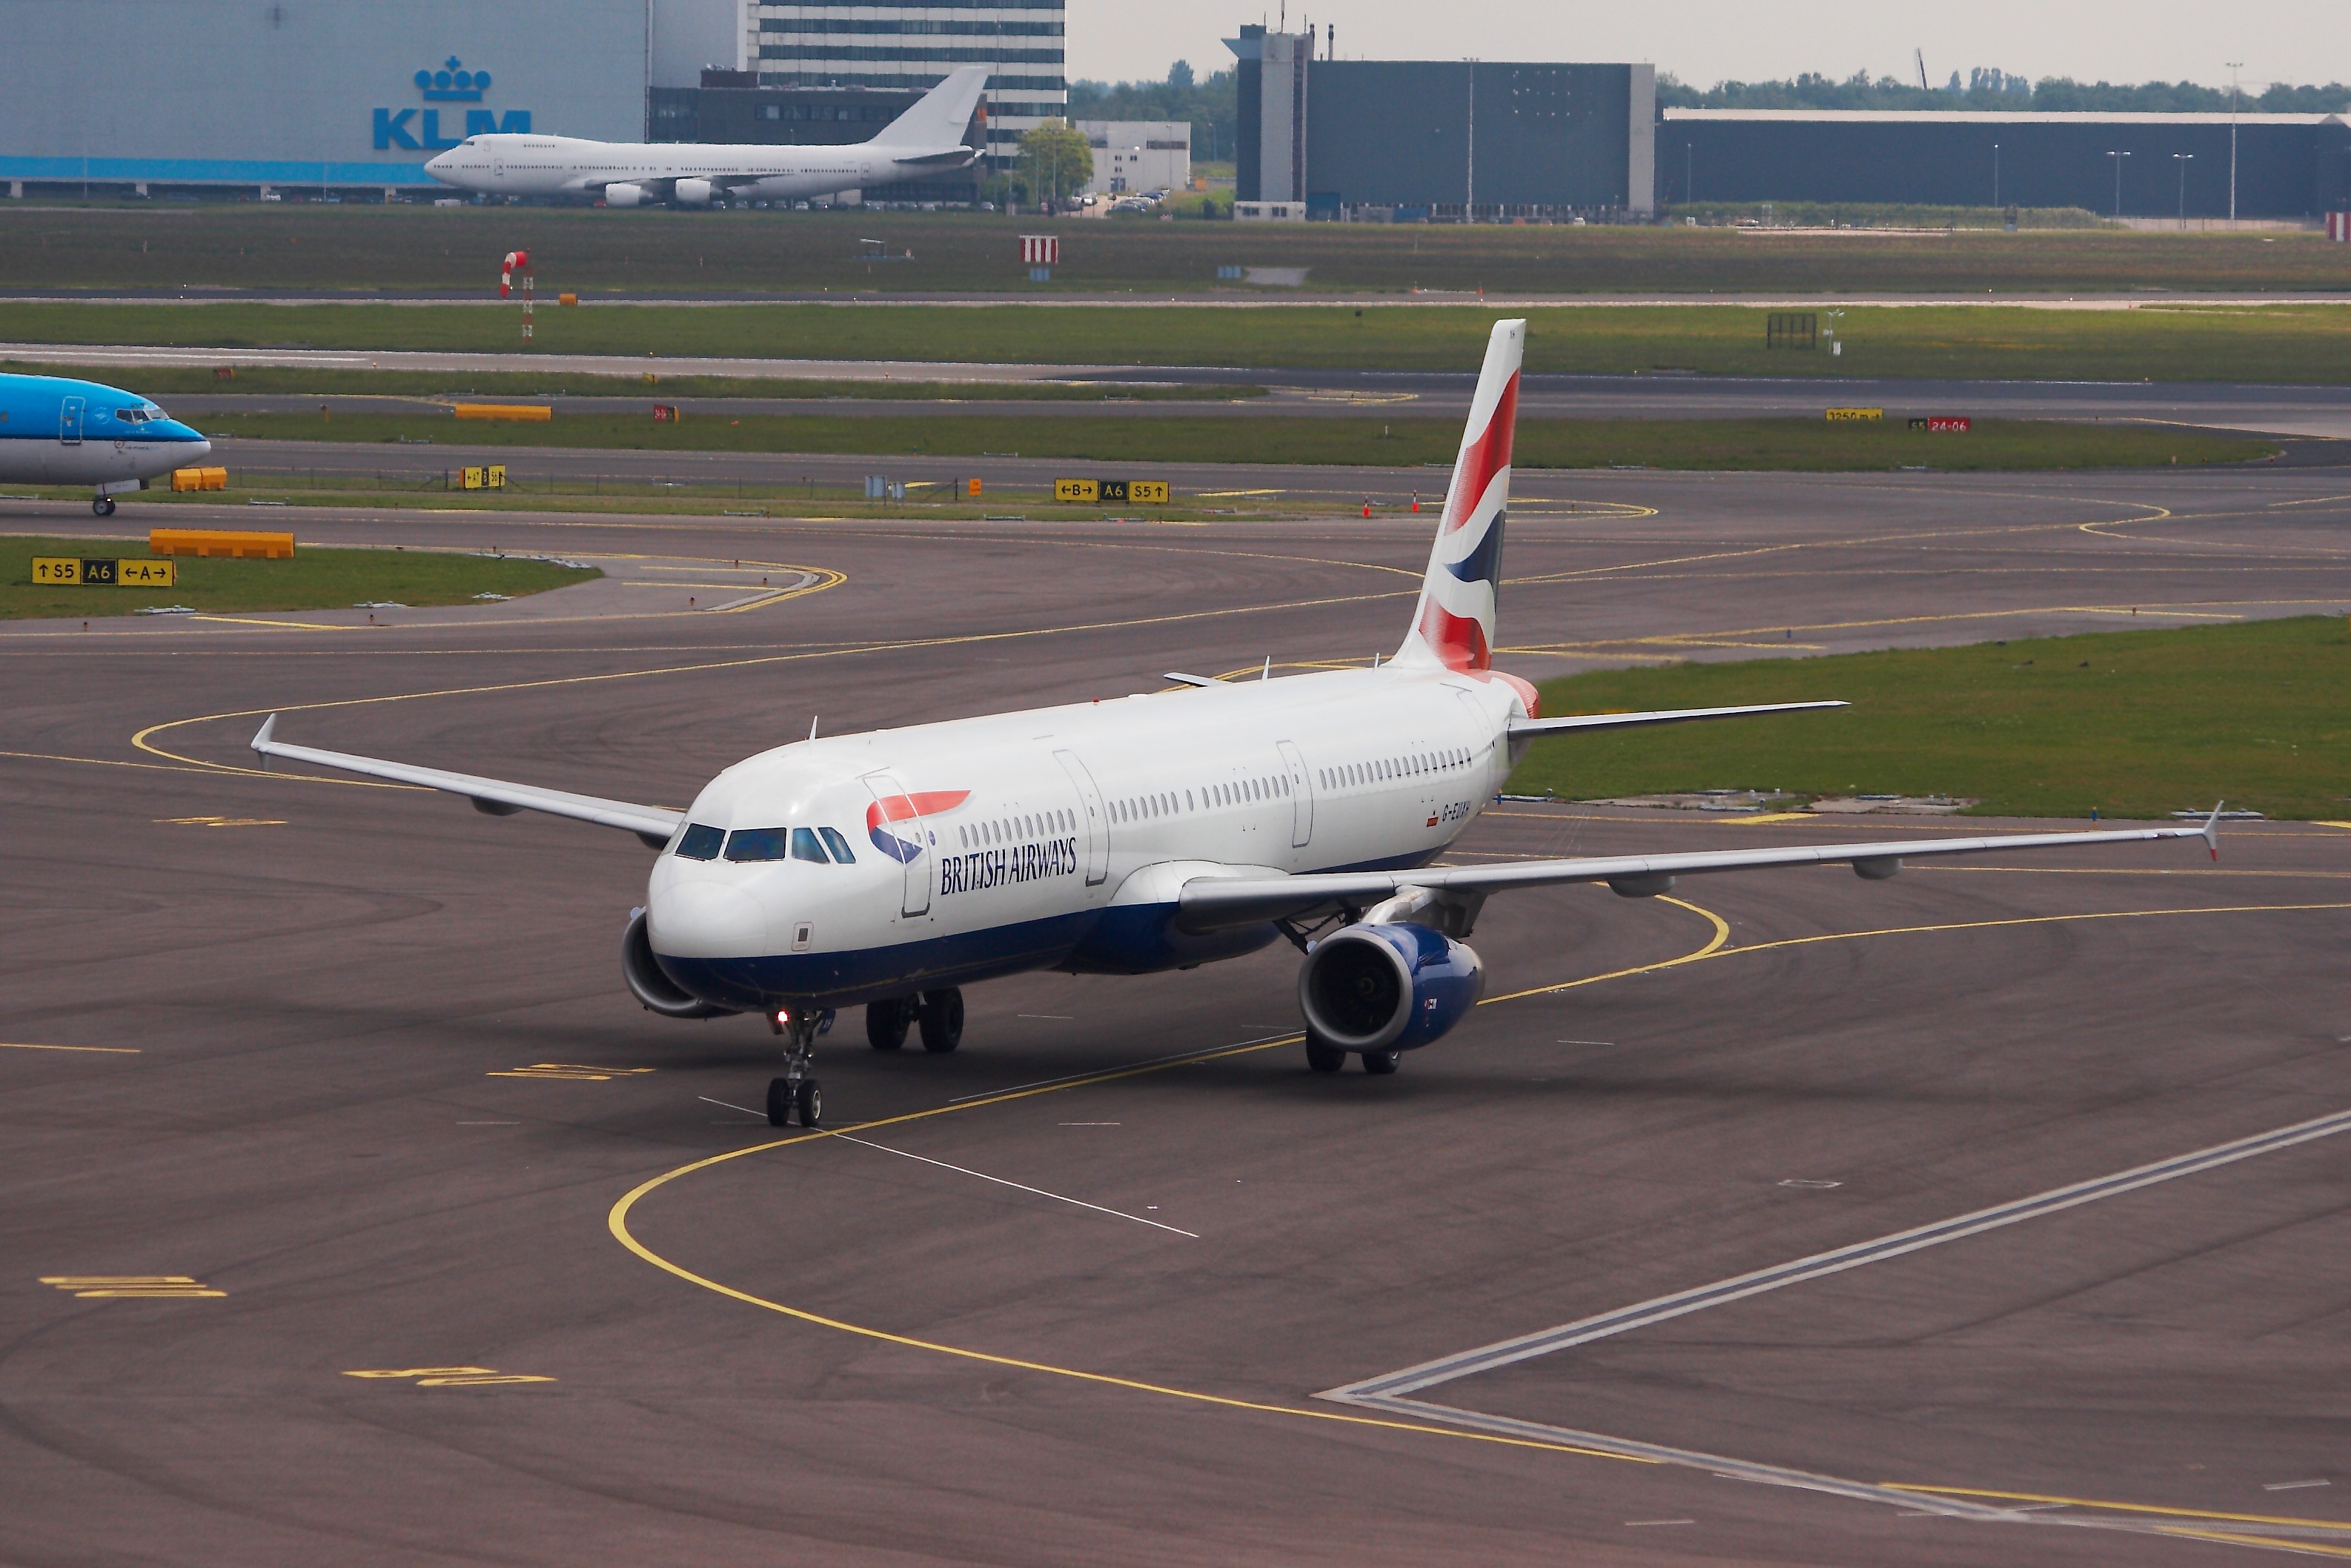 Airbus A321-231 - British Airways - G-EUXH - EHAM